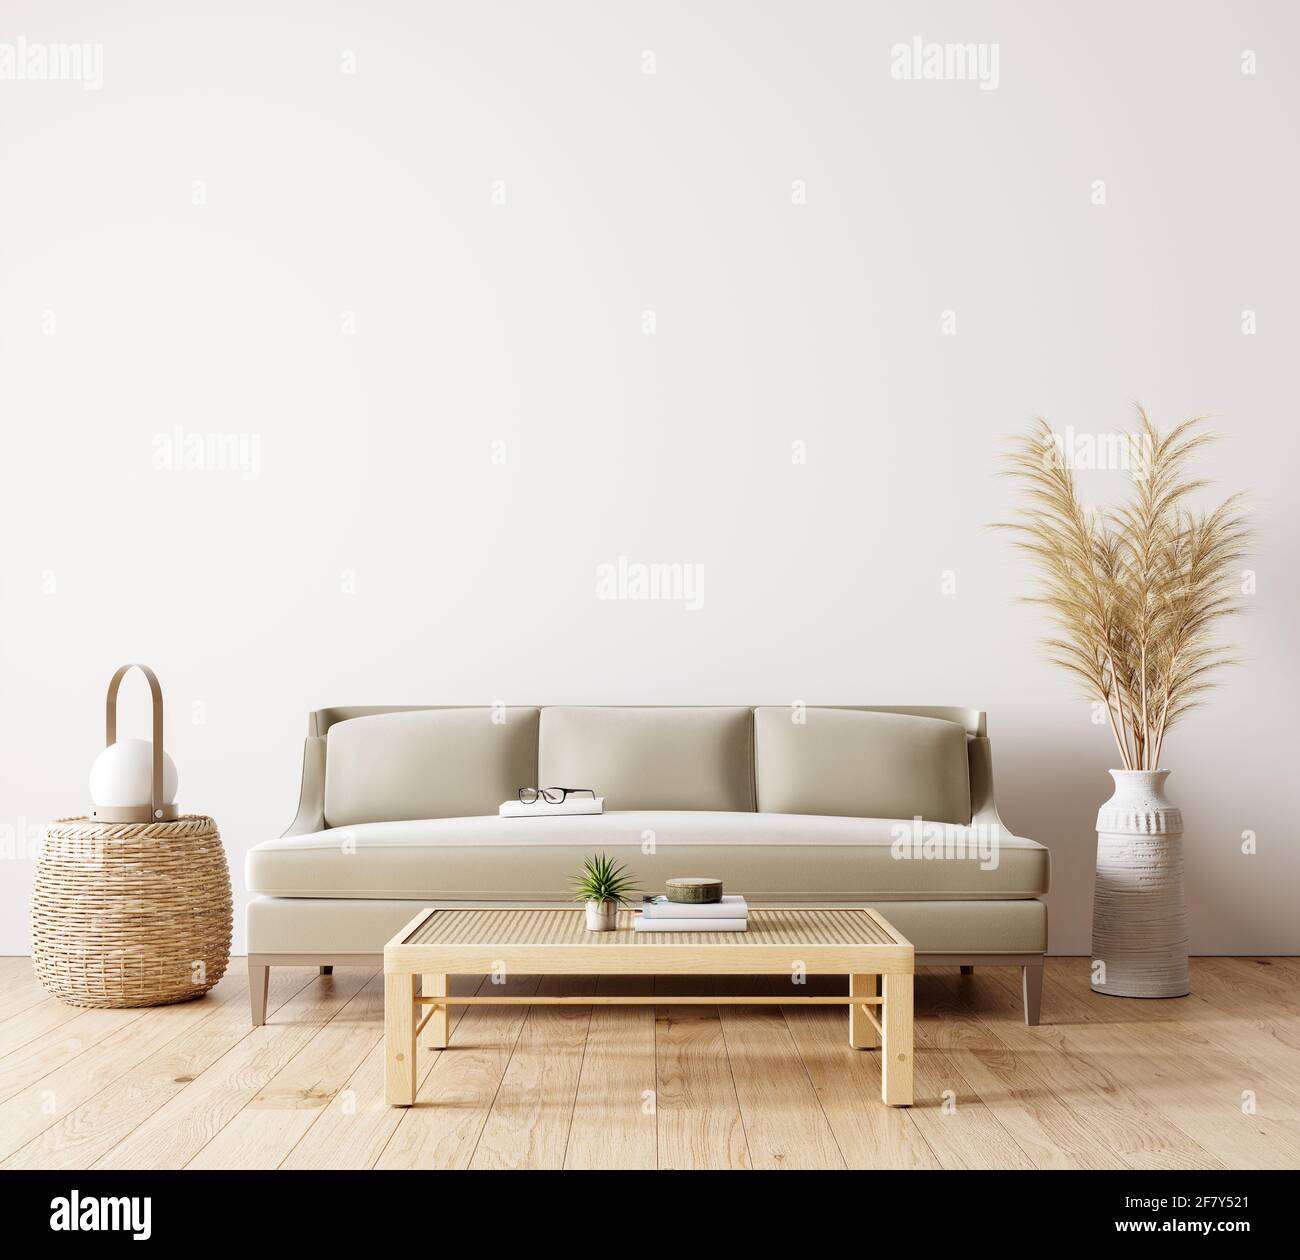 Interni dal design moderno del soggiorno in colori naturali con decorazione di piante asciutte e vuoto bianco mock su sfondo parete Rendering 3D Foto Stock